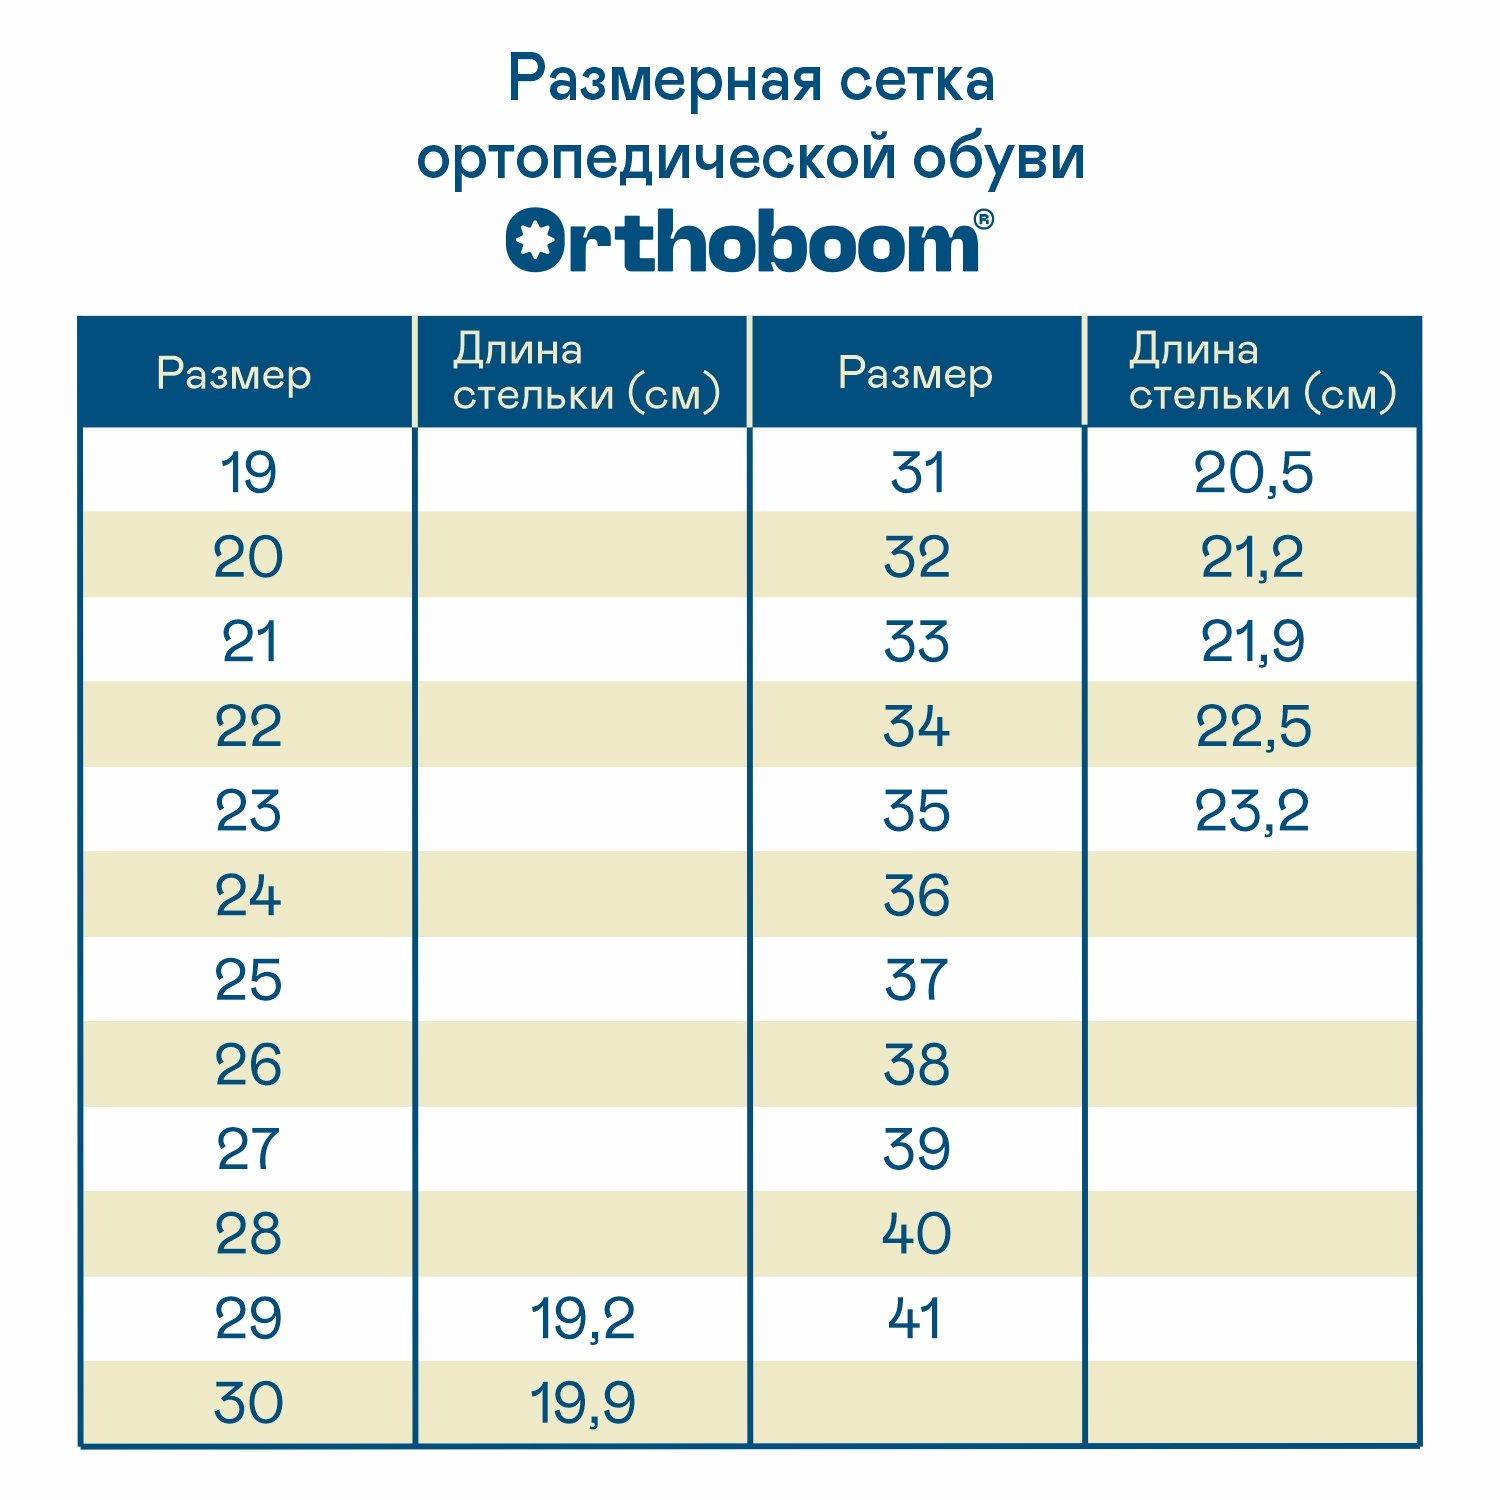 Детские полусапожки ORTHOBOOM 61423-03 нейтрально-серый